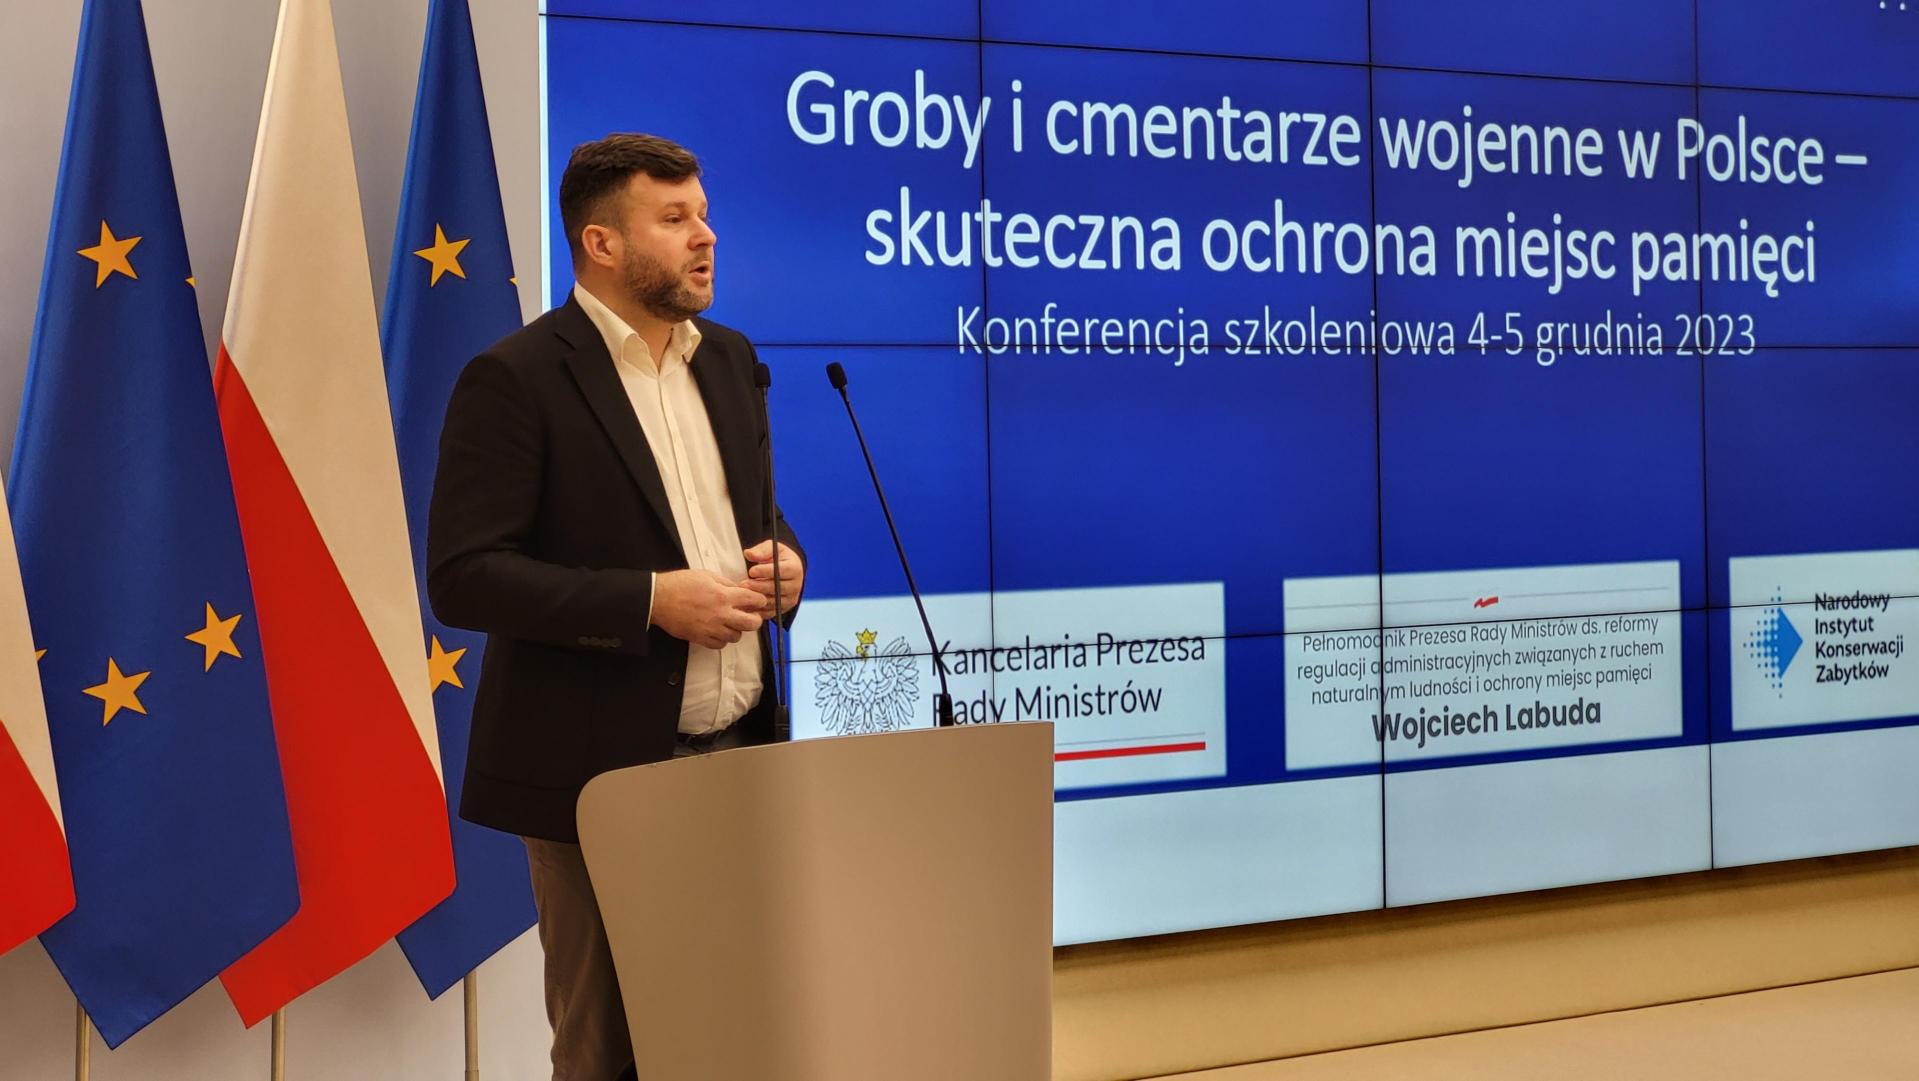 Prelegent na scenie omawiający prezentacje. W tle flagi Polski i UE i ekran z prezentacją